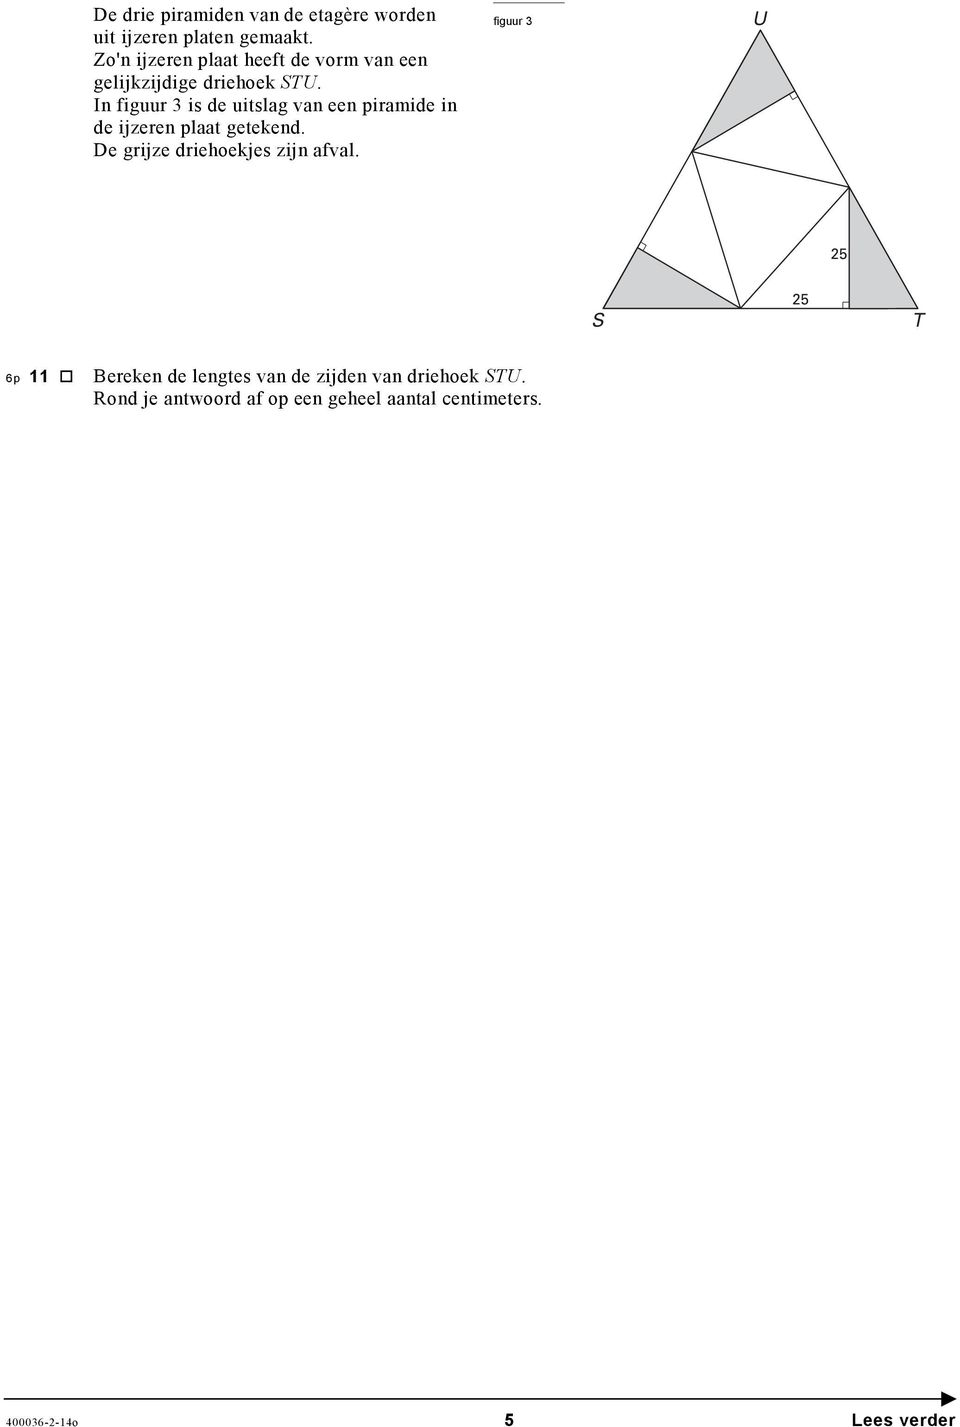 In figuur 3 is de uitslag van een piramide in de ijzeren plaat getekend.